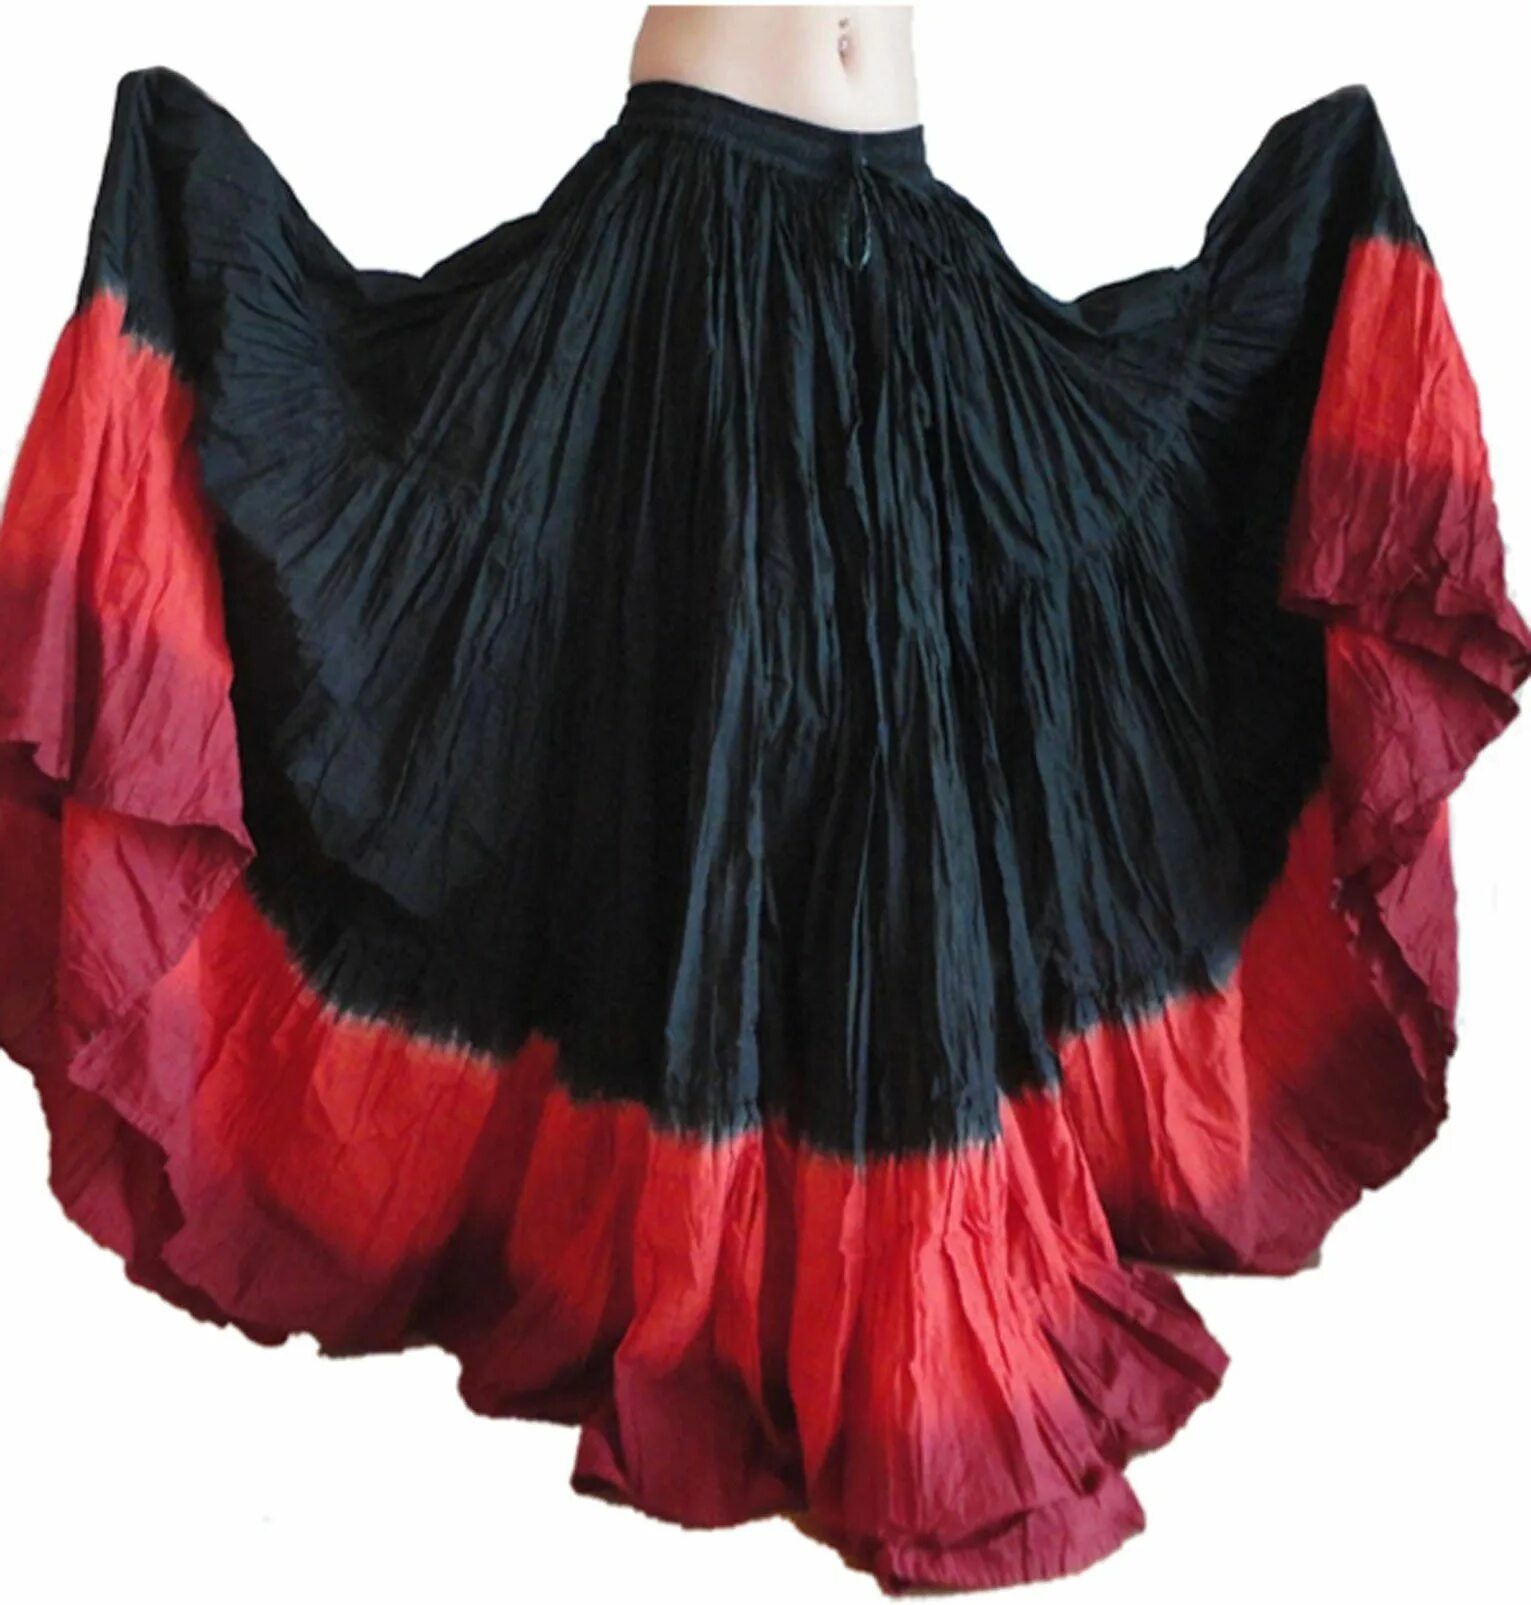 Купить цыганскую юбку. Цыганская юбка. Цыганское платье. Цыганский наряд. Юбка для танцев.